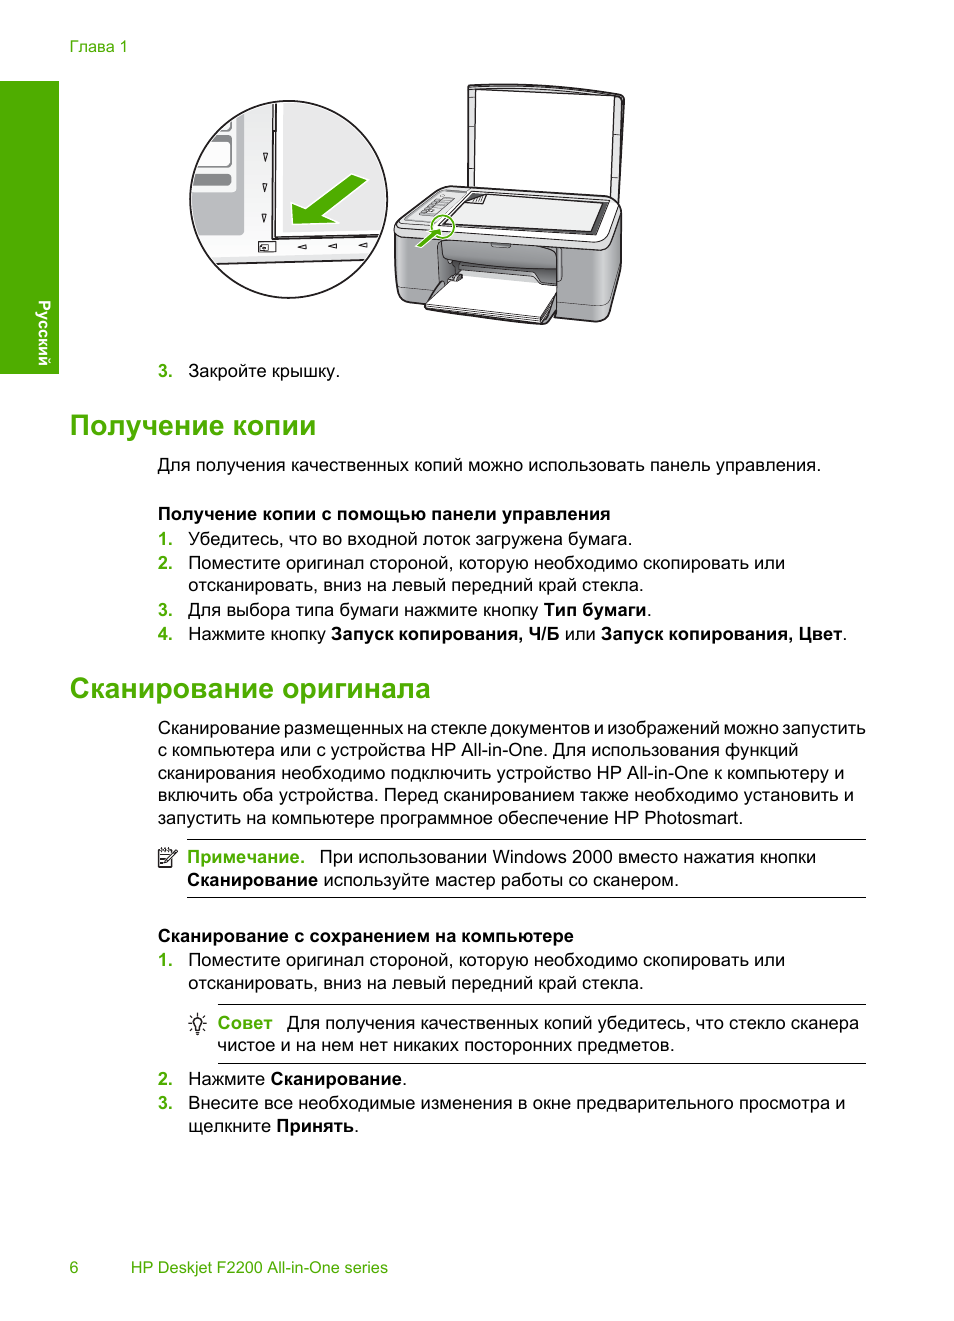 Как правильно сканировать и ксерокопировать на принтере